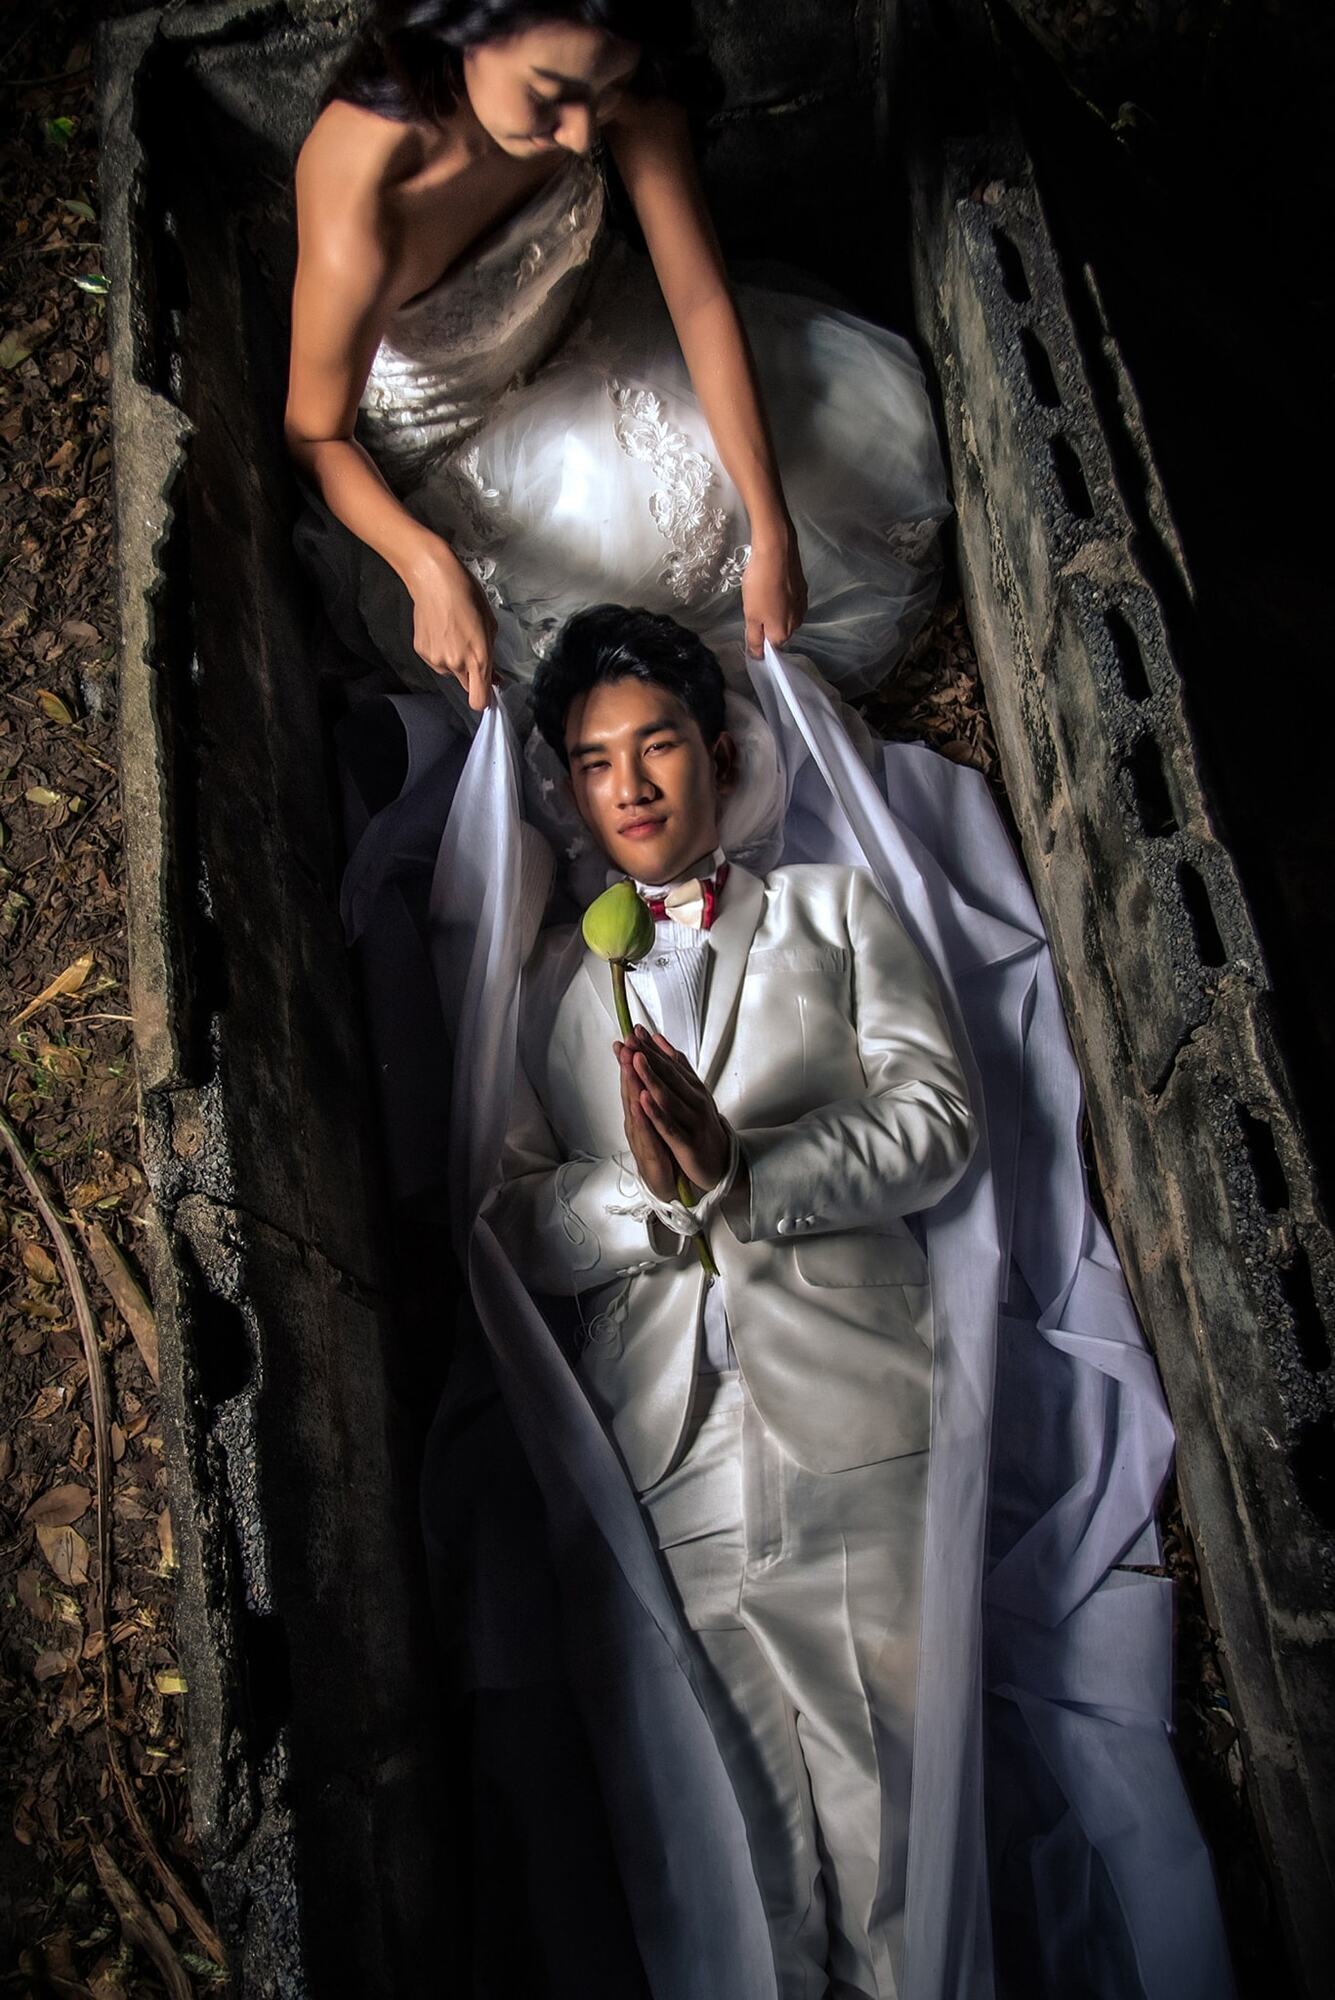 Пара из Таиланда устроила свадебную фотосессию в гробу и сымитировала кремацию: им пригрозили проклятием